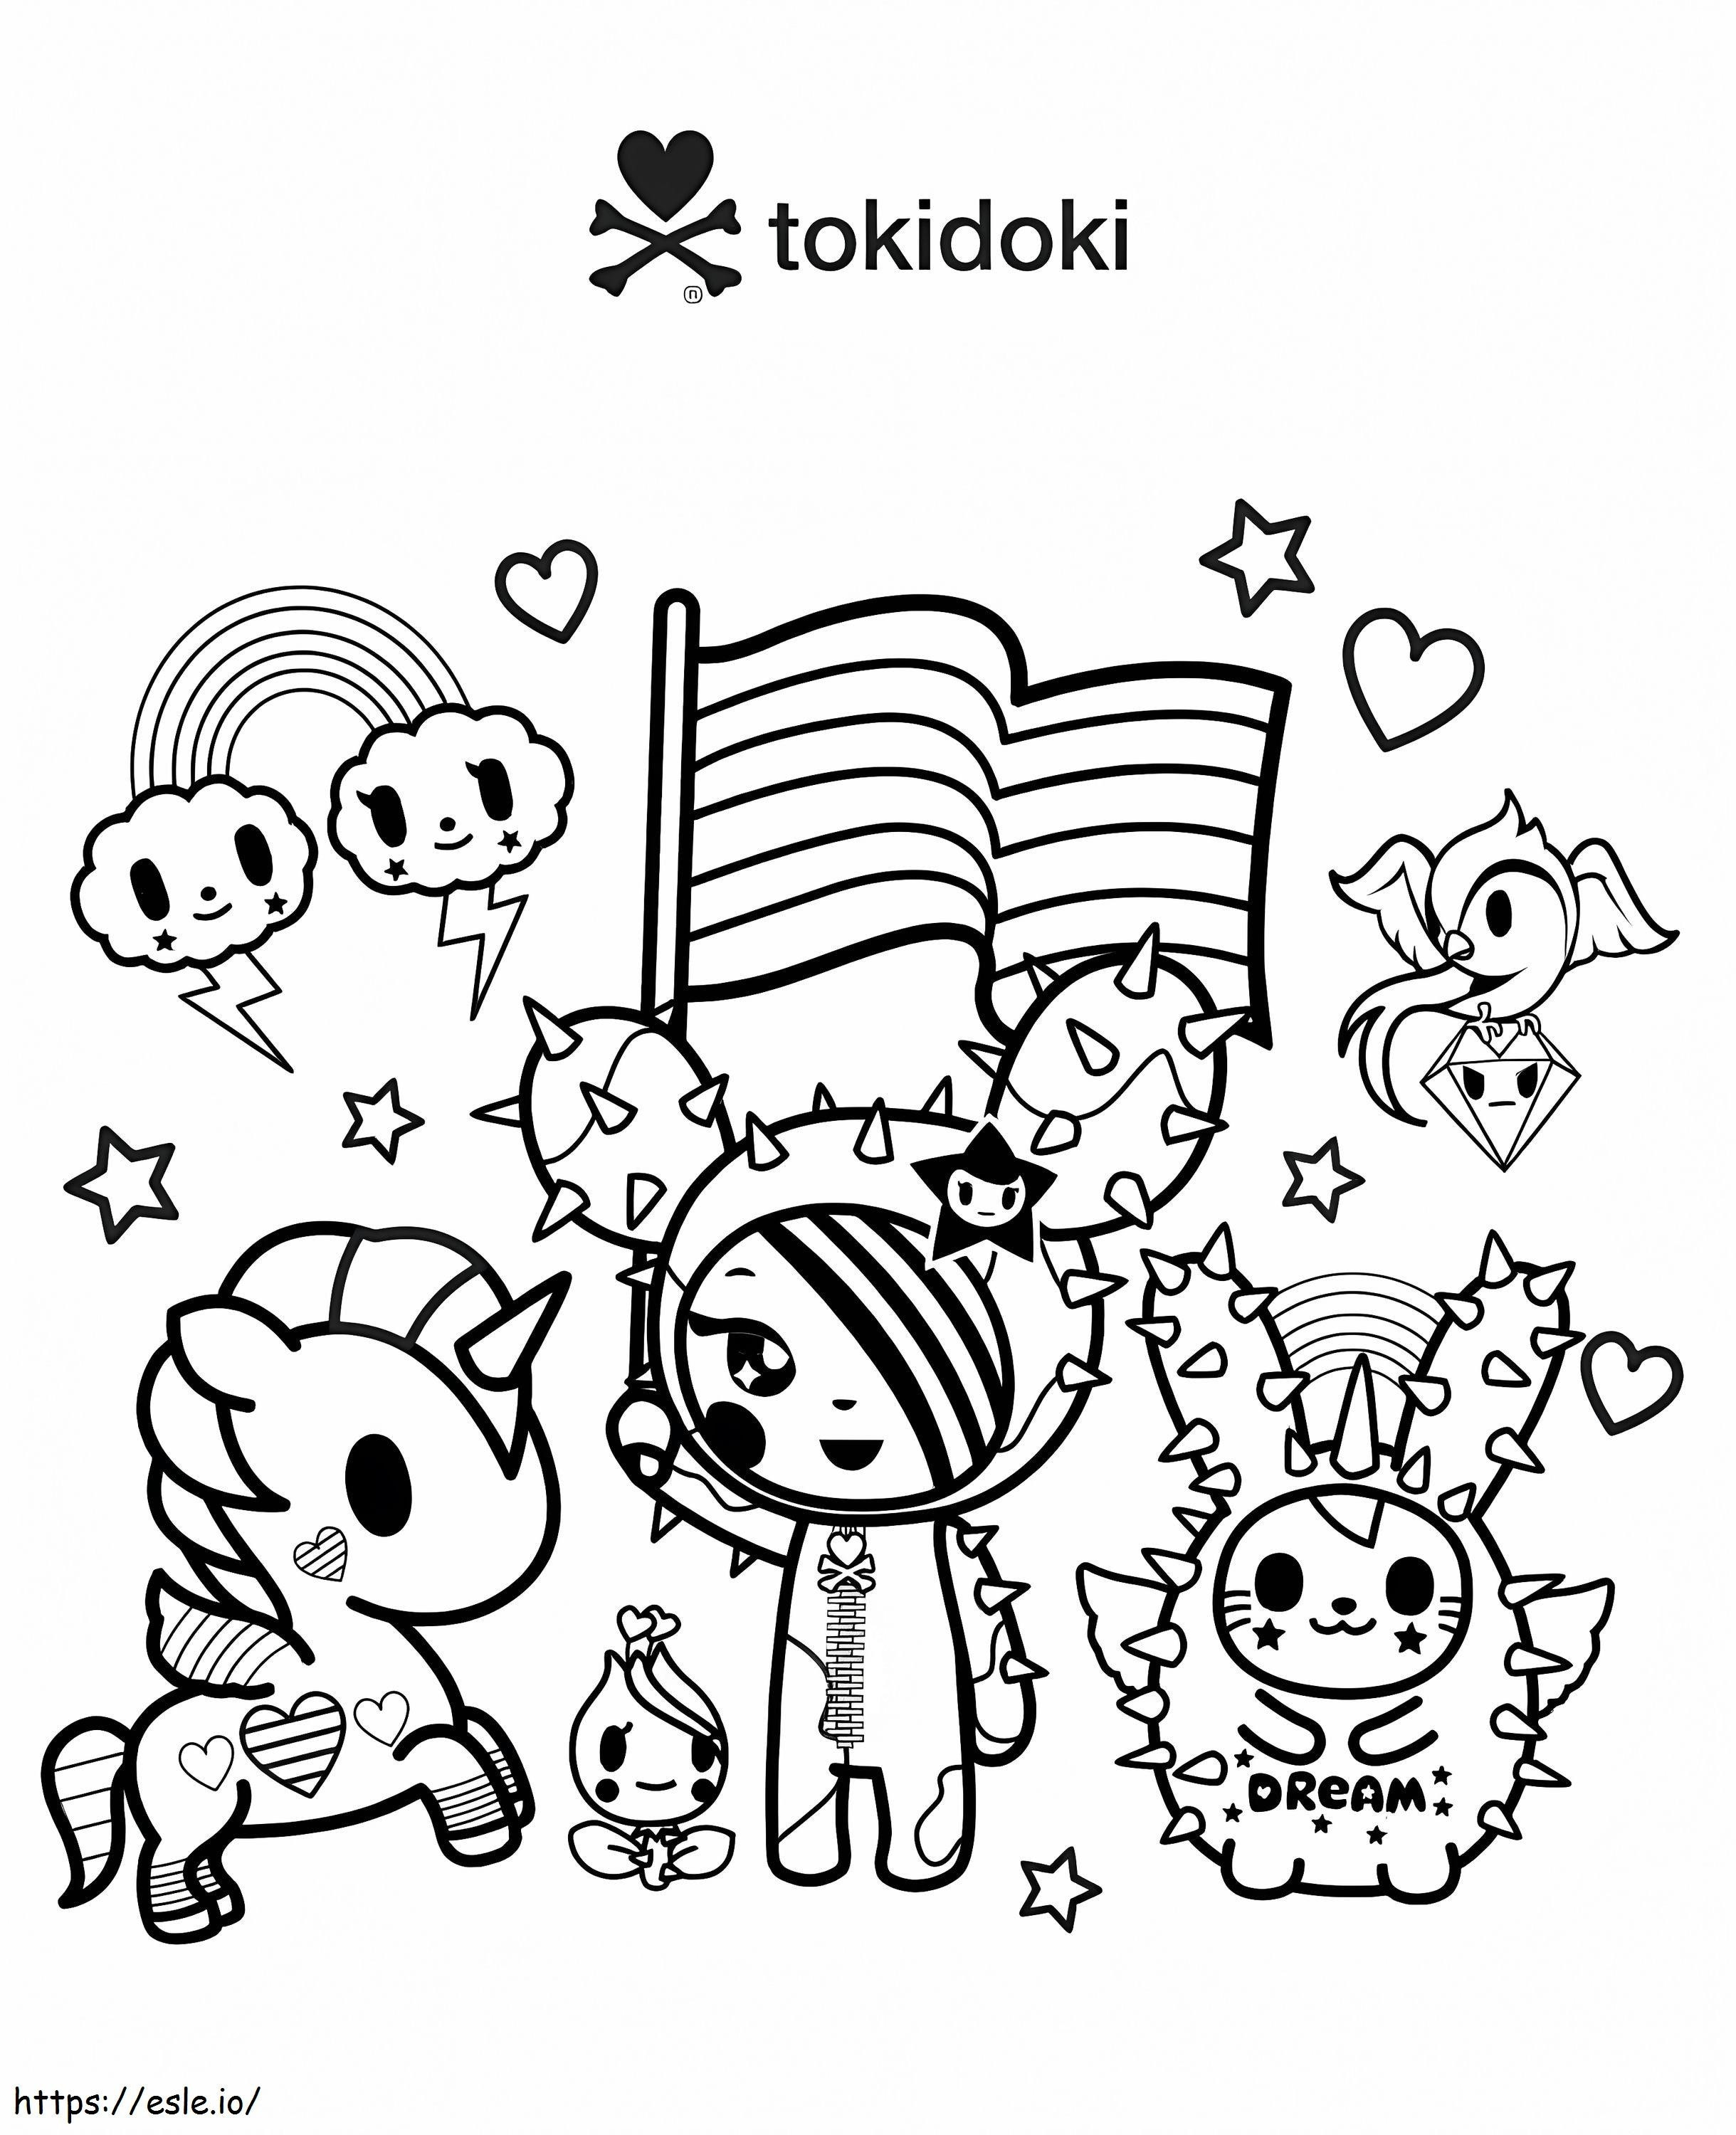 Świętuj Miłość Tokidoki kolorowanka